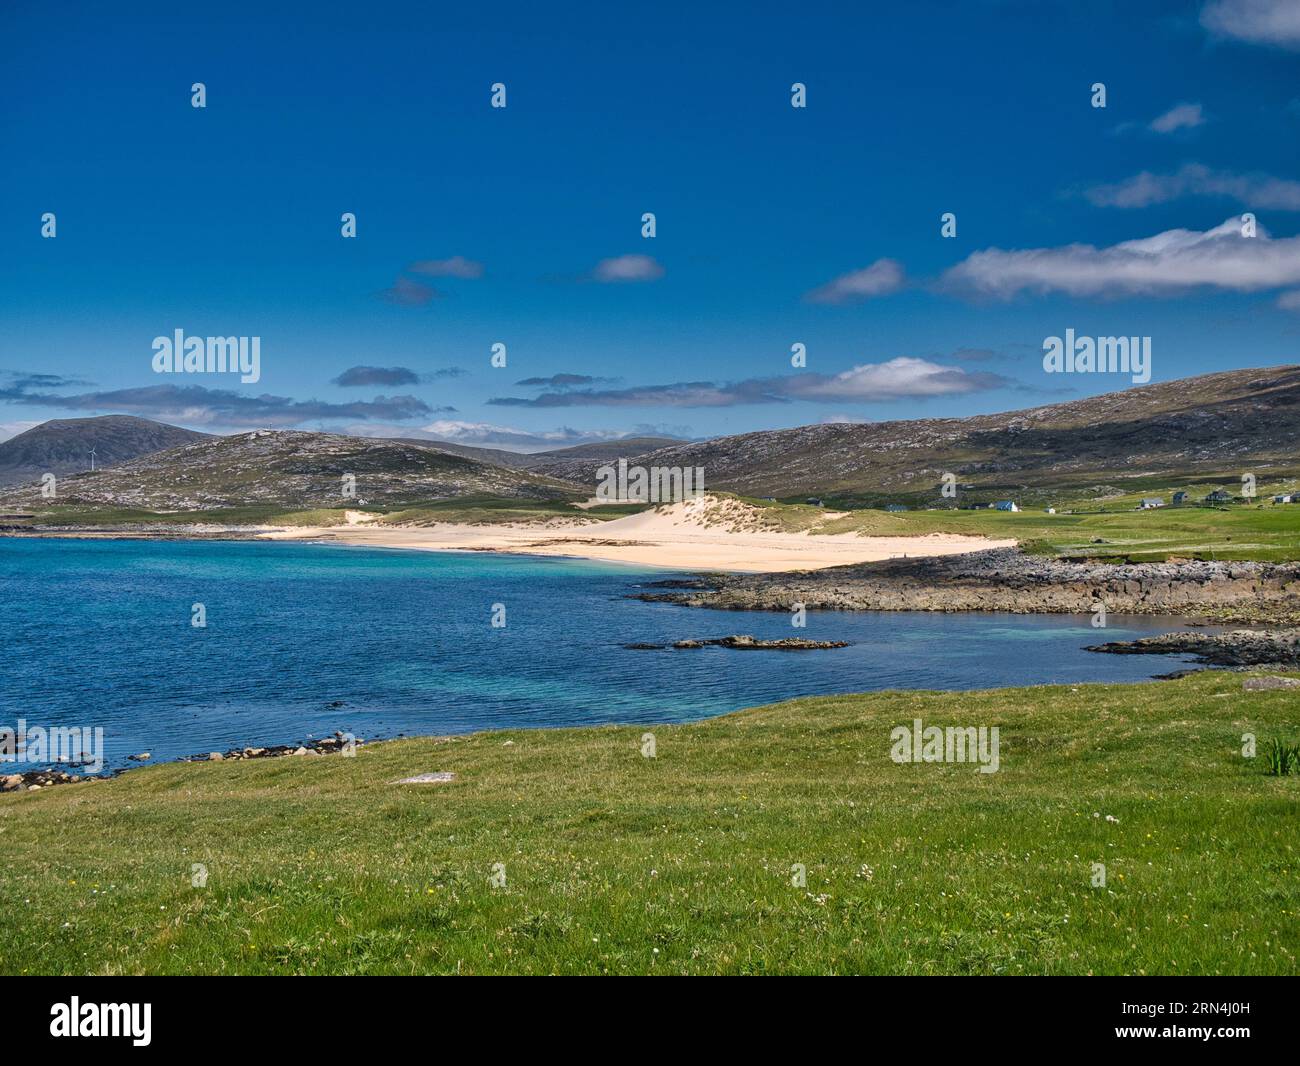 Le sabbie bianche e le acque turchesi dell'incontaminata baia di Luskentyre nelle Ebridi esterne. In una giornata di sole d'estate. Foto Stock